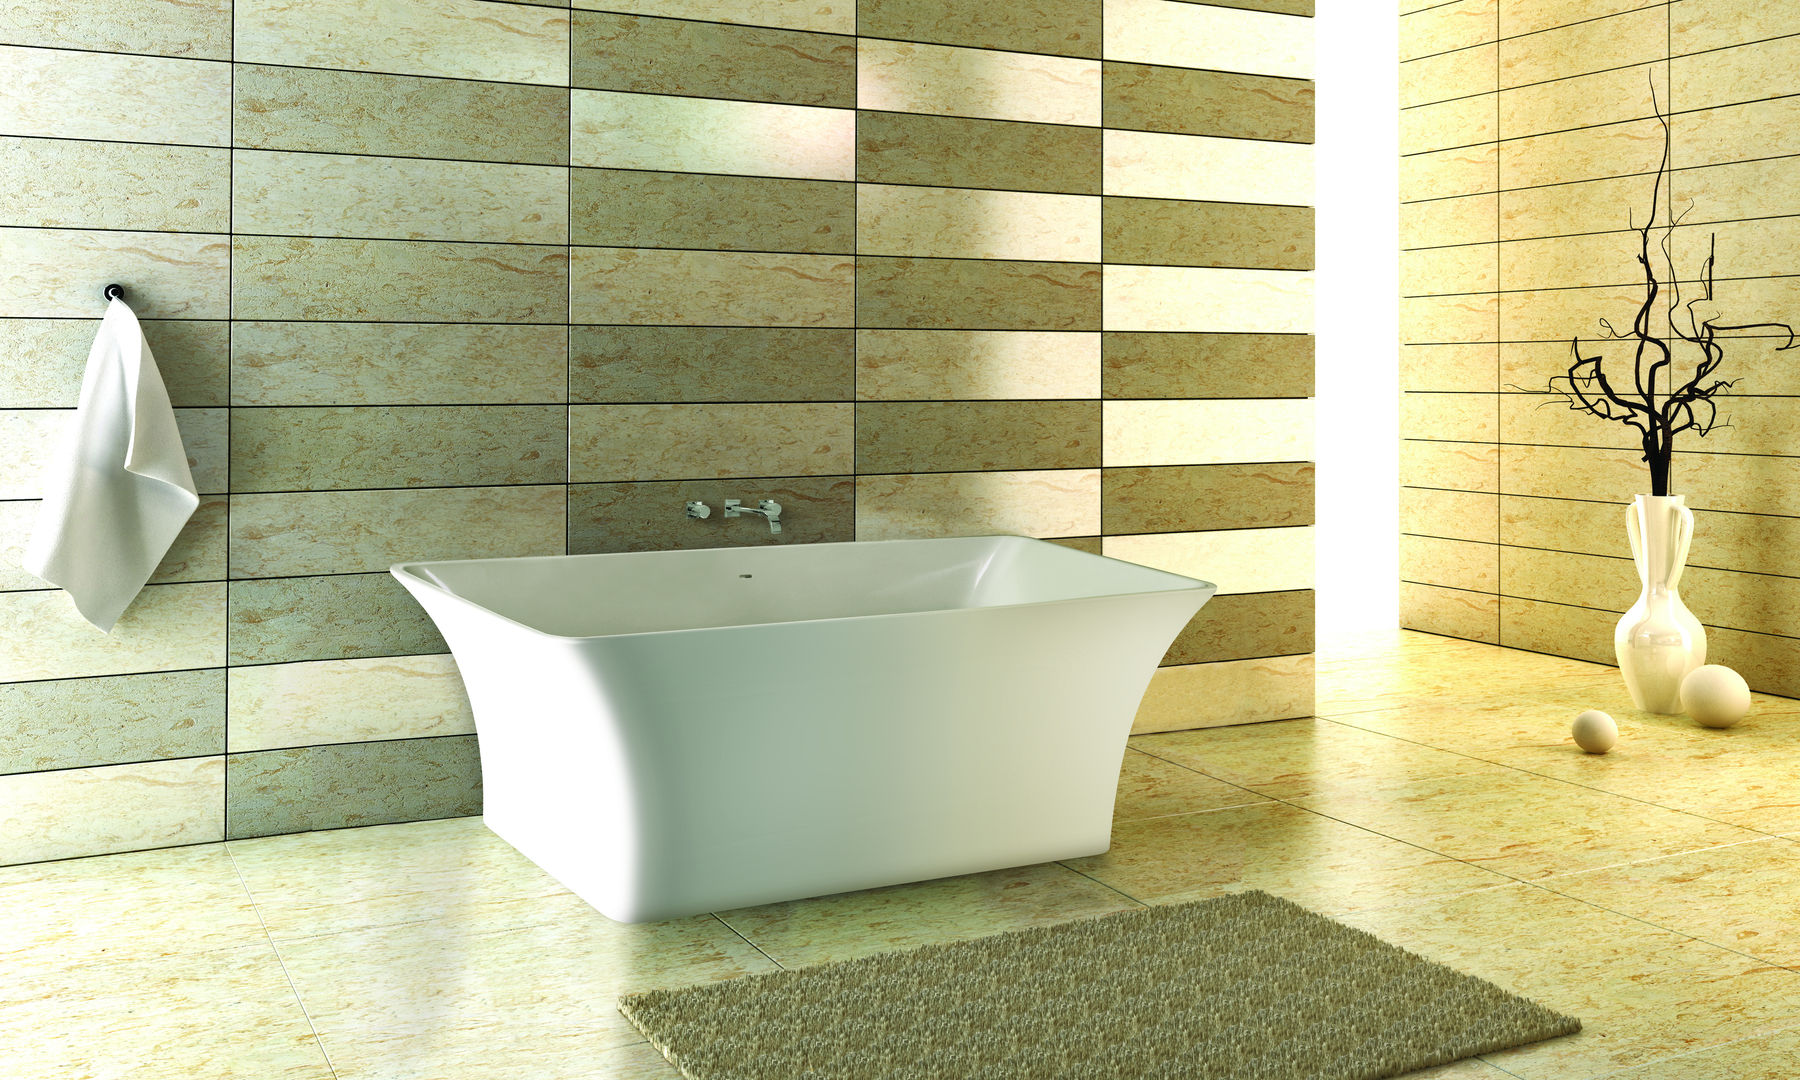 The Feng Bath BC Designs Baños de estilo moderno Bañeras y duchas